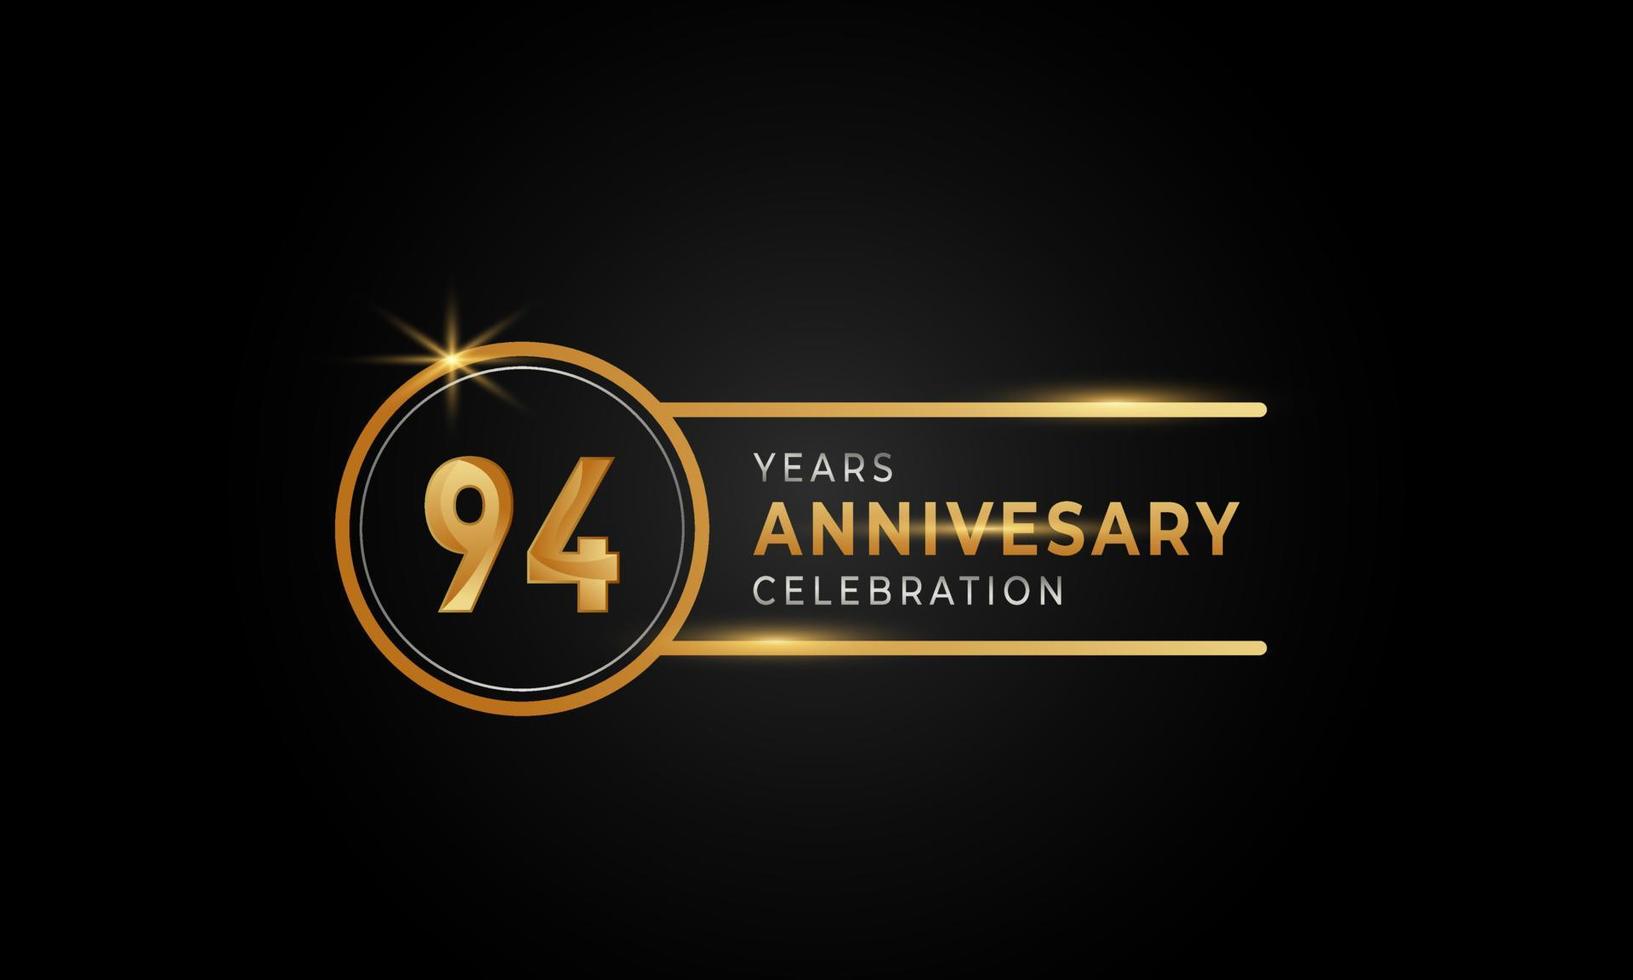 Goldene und silberne Farbe des 94-jährigen Jubiläums mit Kreisring für Feierlichkeiten, Hochzeiten, Grußkarten und Einladungen einzeln auf schwarzem Hintergrund vektor